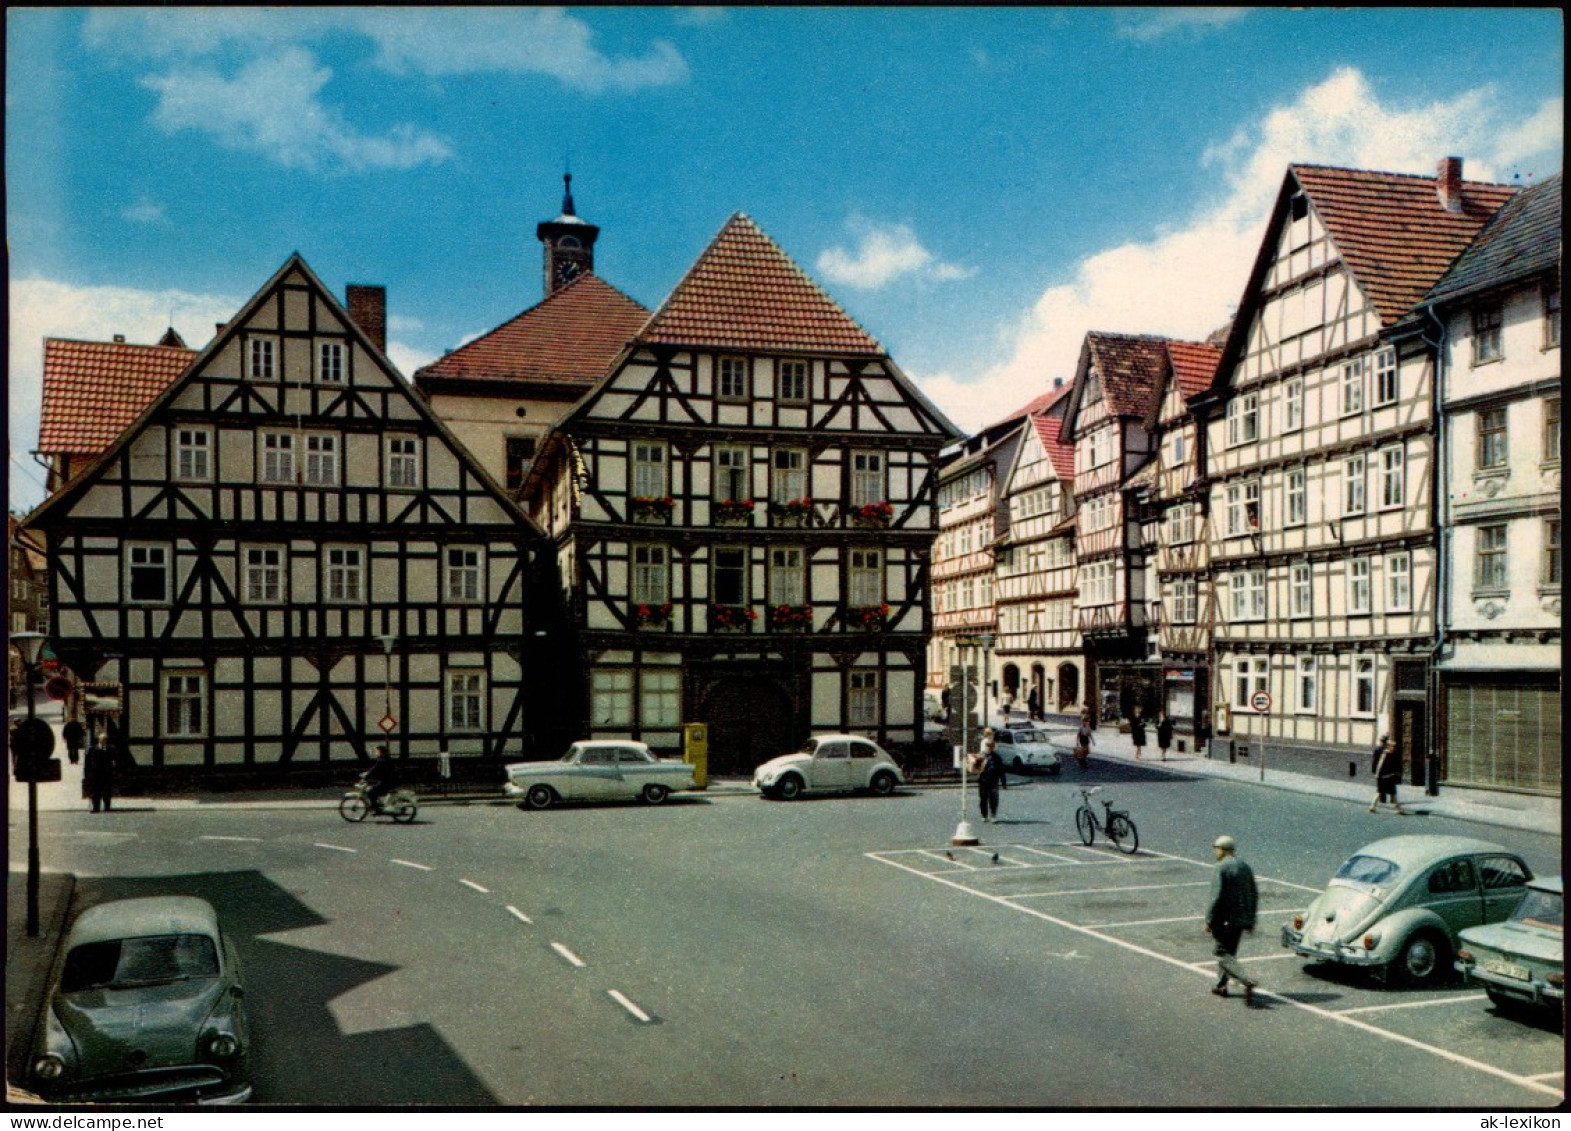 Ansichtskarte Eschwege Rathaus Parkplatz Mit Autos U.a. VW Käfer 1970 - Eschwege